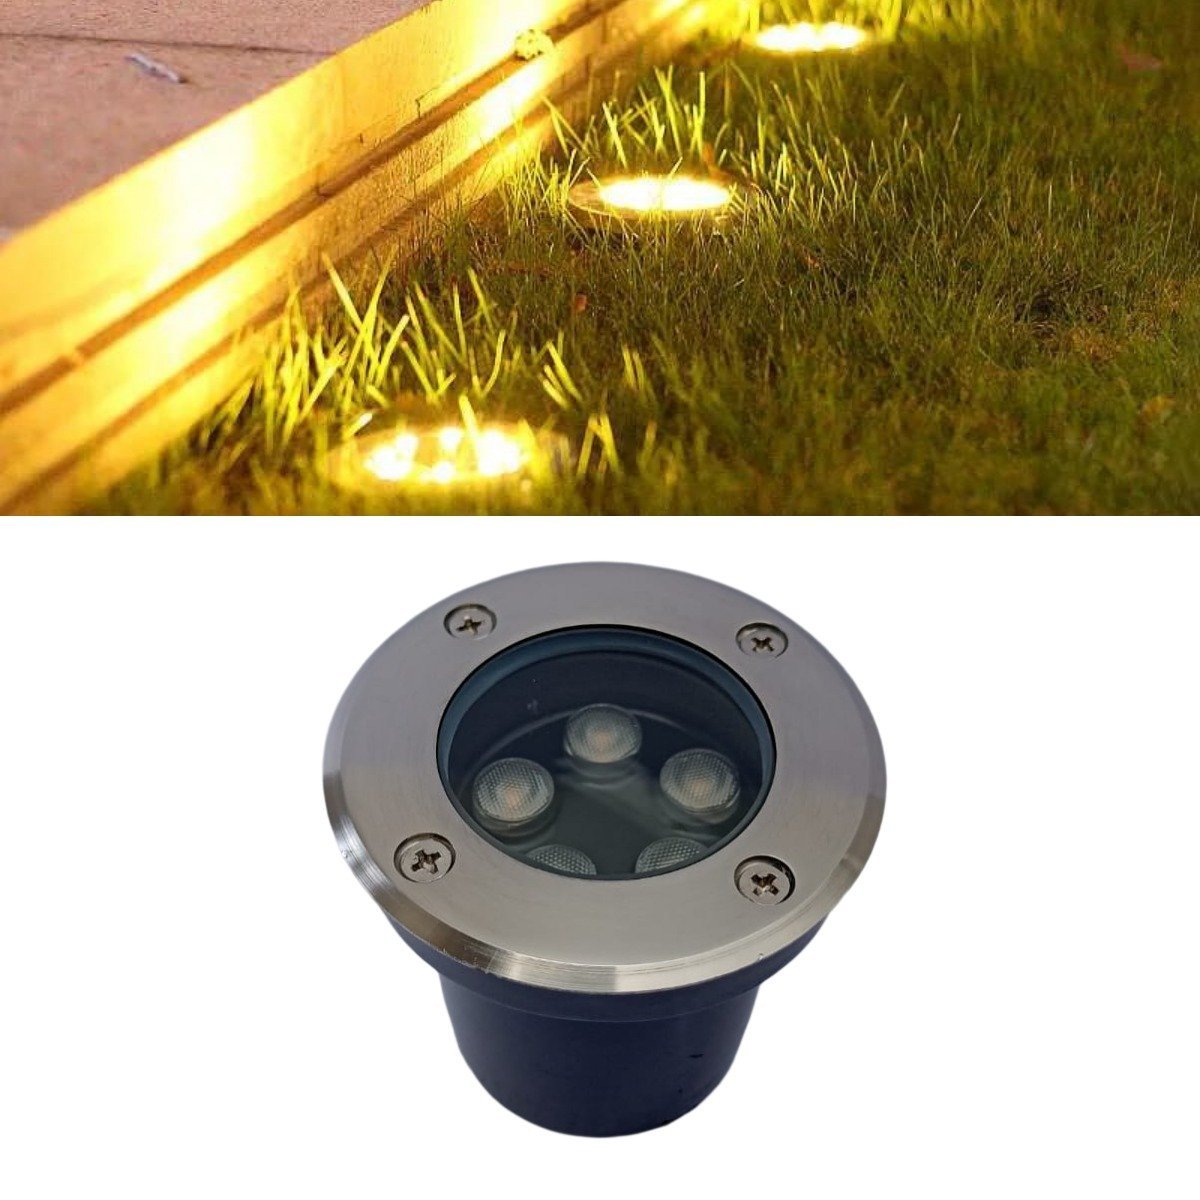 Luminária Balizador Led SMD 5W Externa De Embutir Em Piso Chão Bivolt Blindado Vedado Com Iluminação - 4